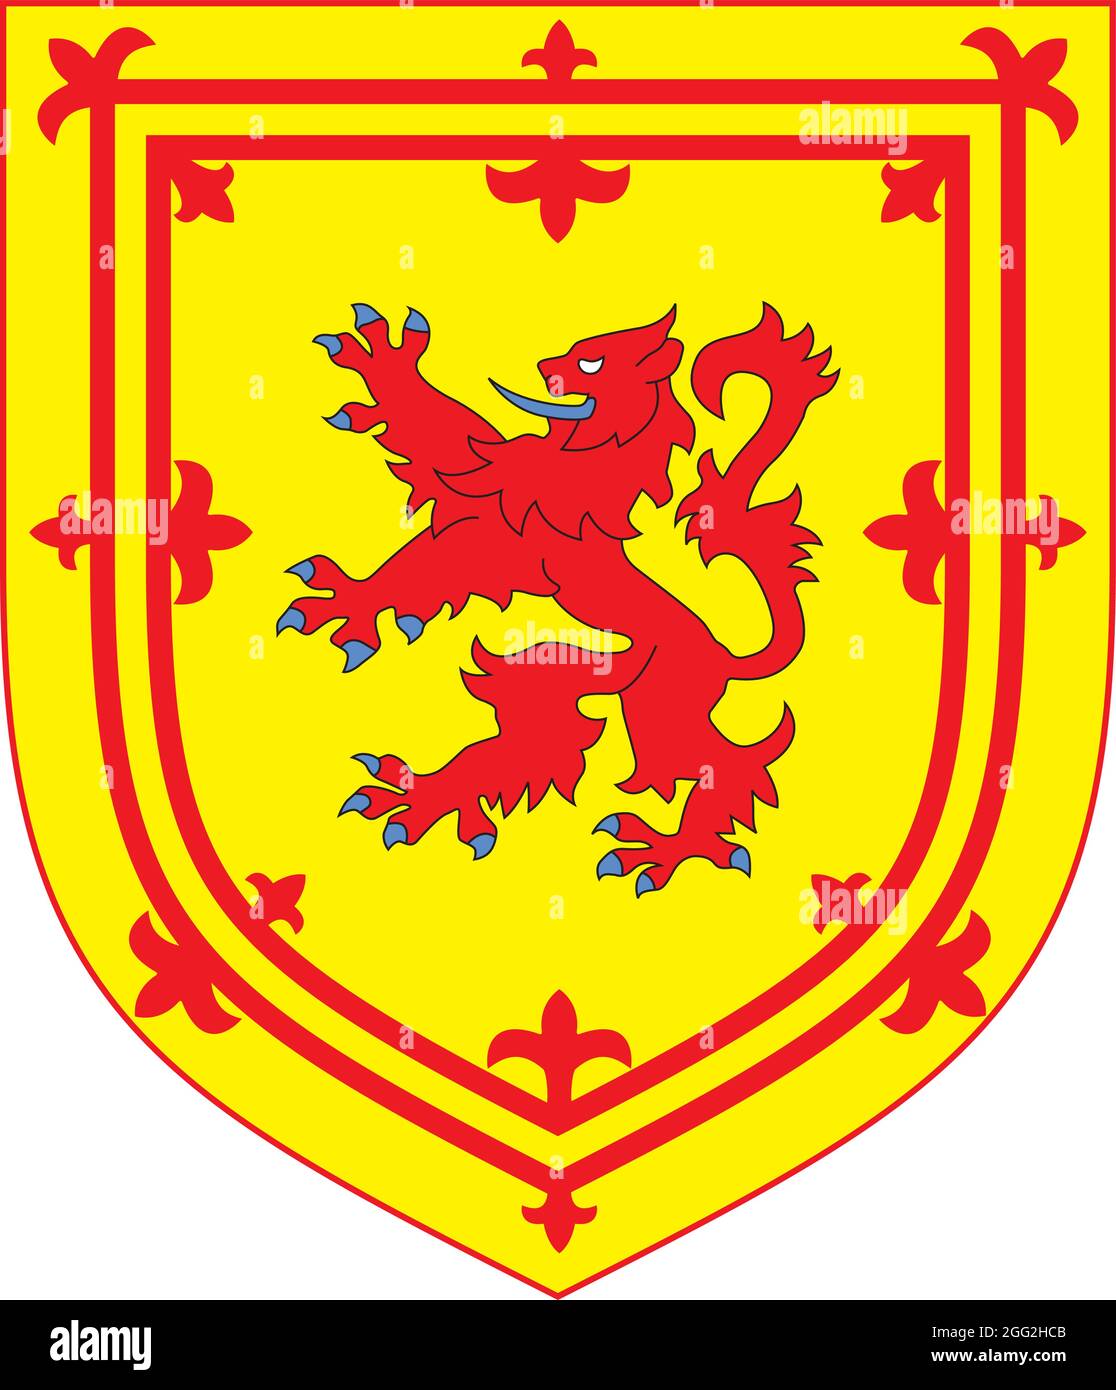 Das ehemalige offizielle königliche Wappen Schottlands Stock Vektor